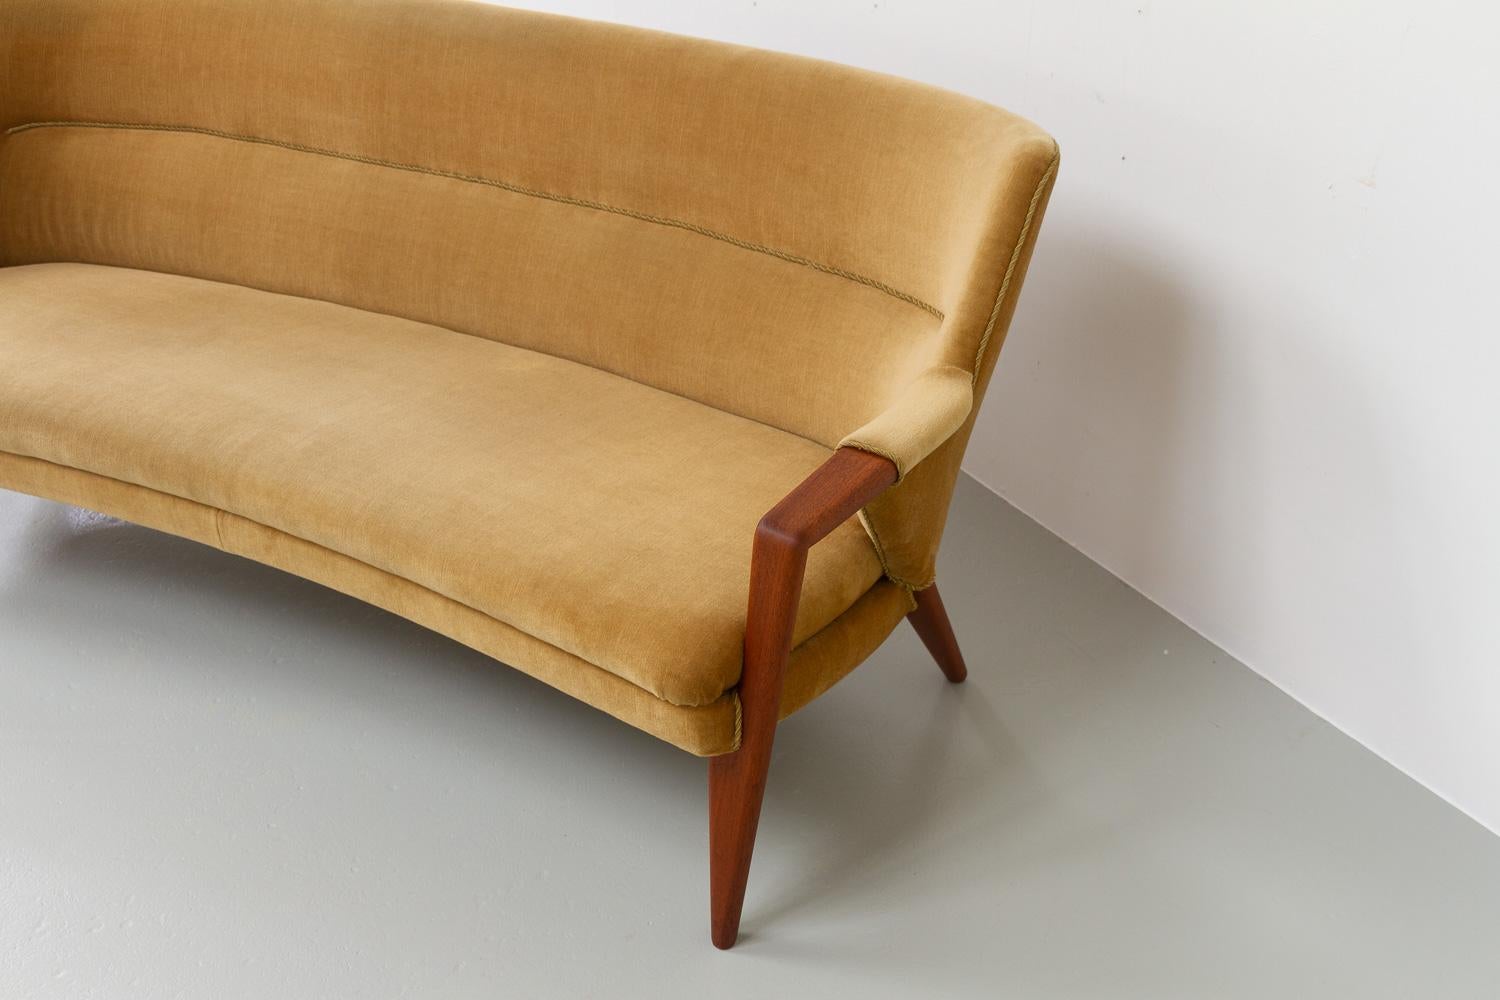 Mid-20th Century Danish Modern Golden Velvet Banana Sofa by Kurt Olsen, 1950s.